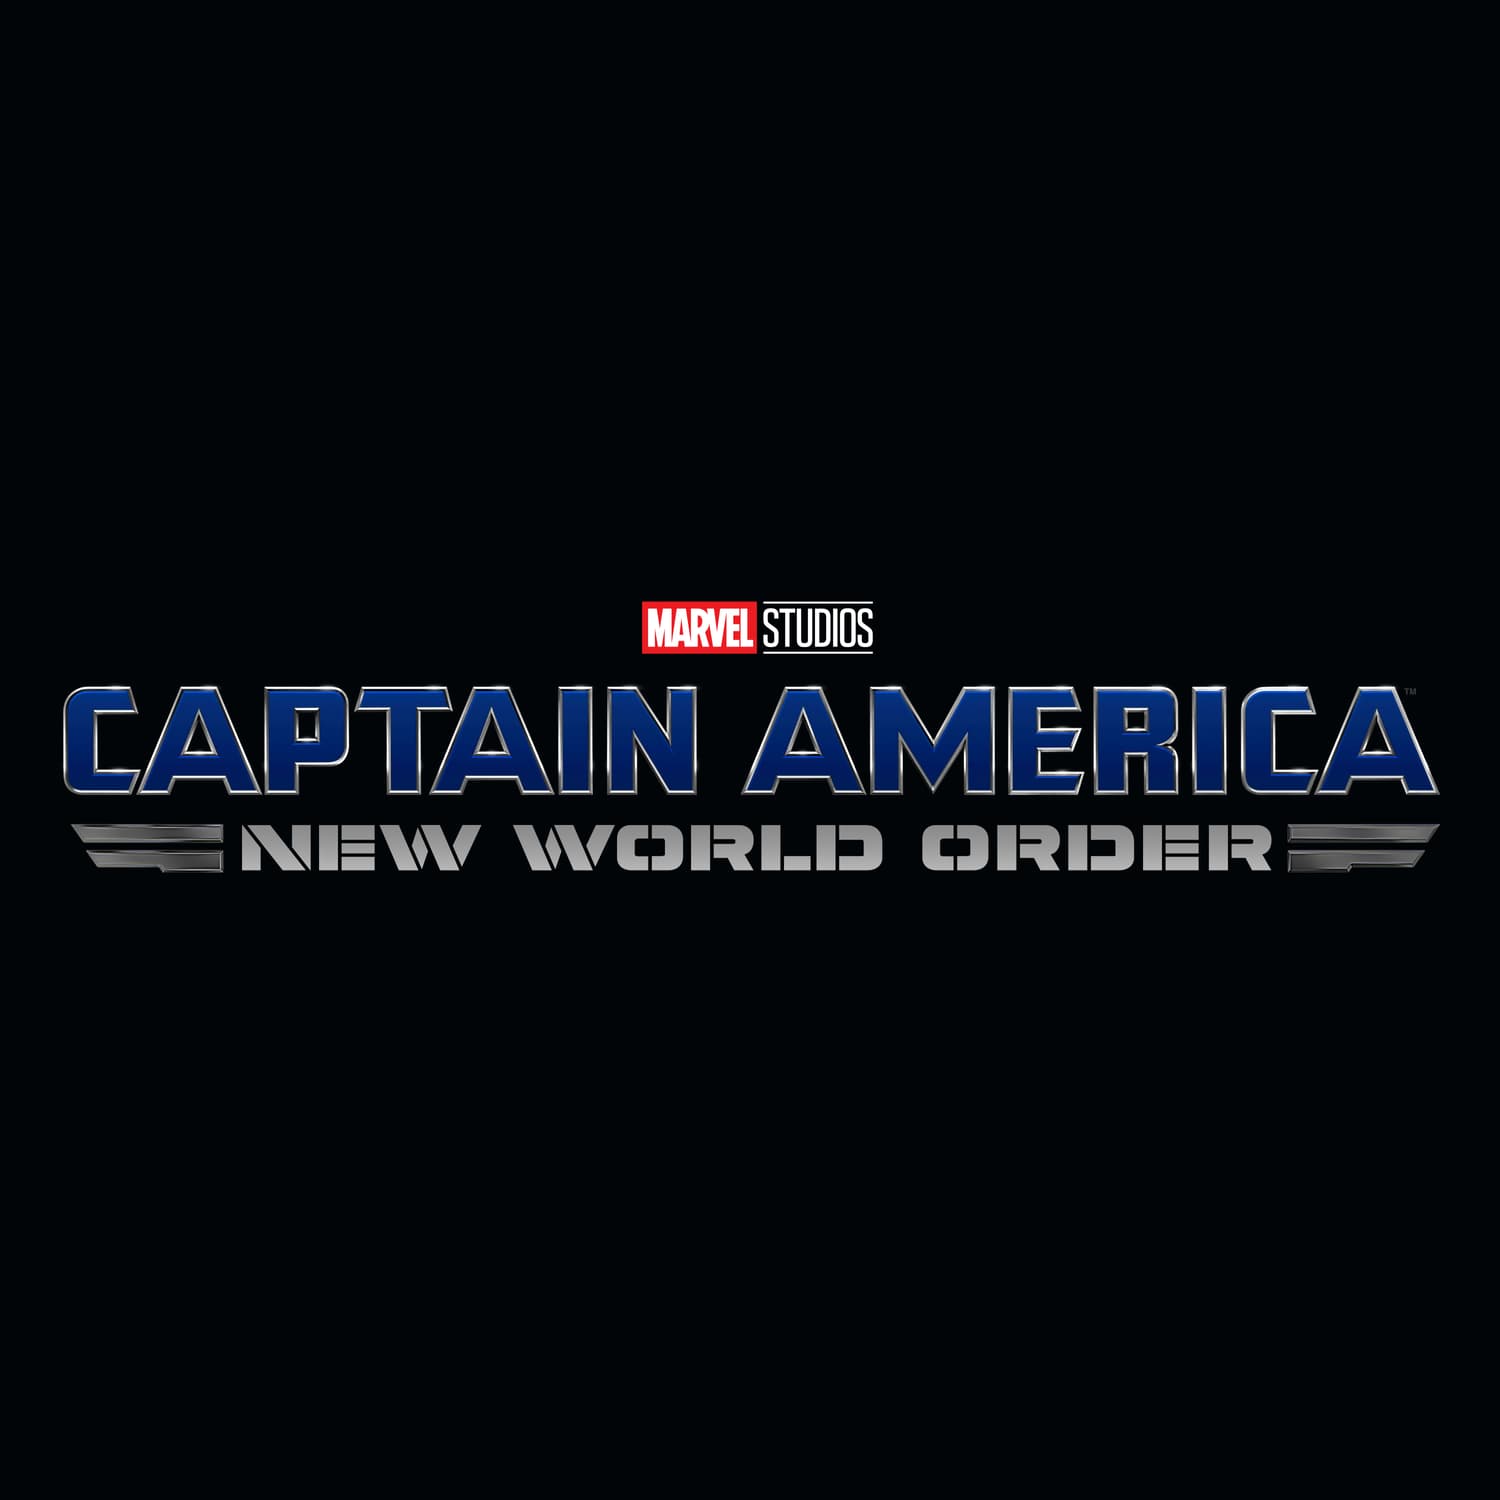 Marvel Studios' Captain America: New World Order